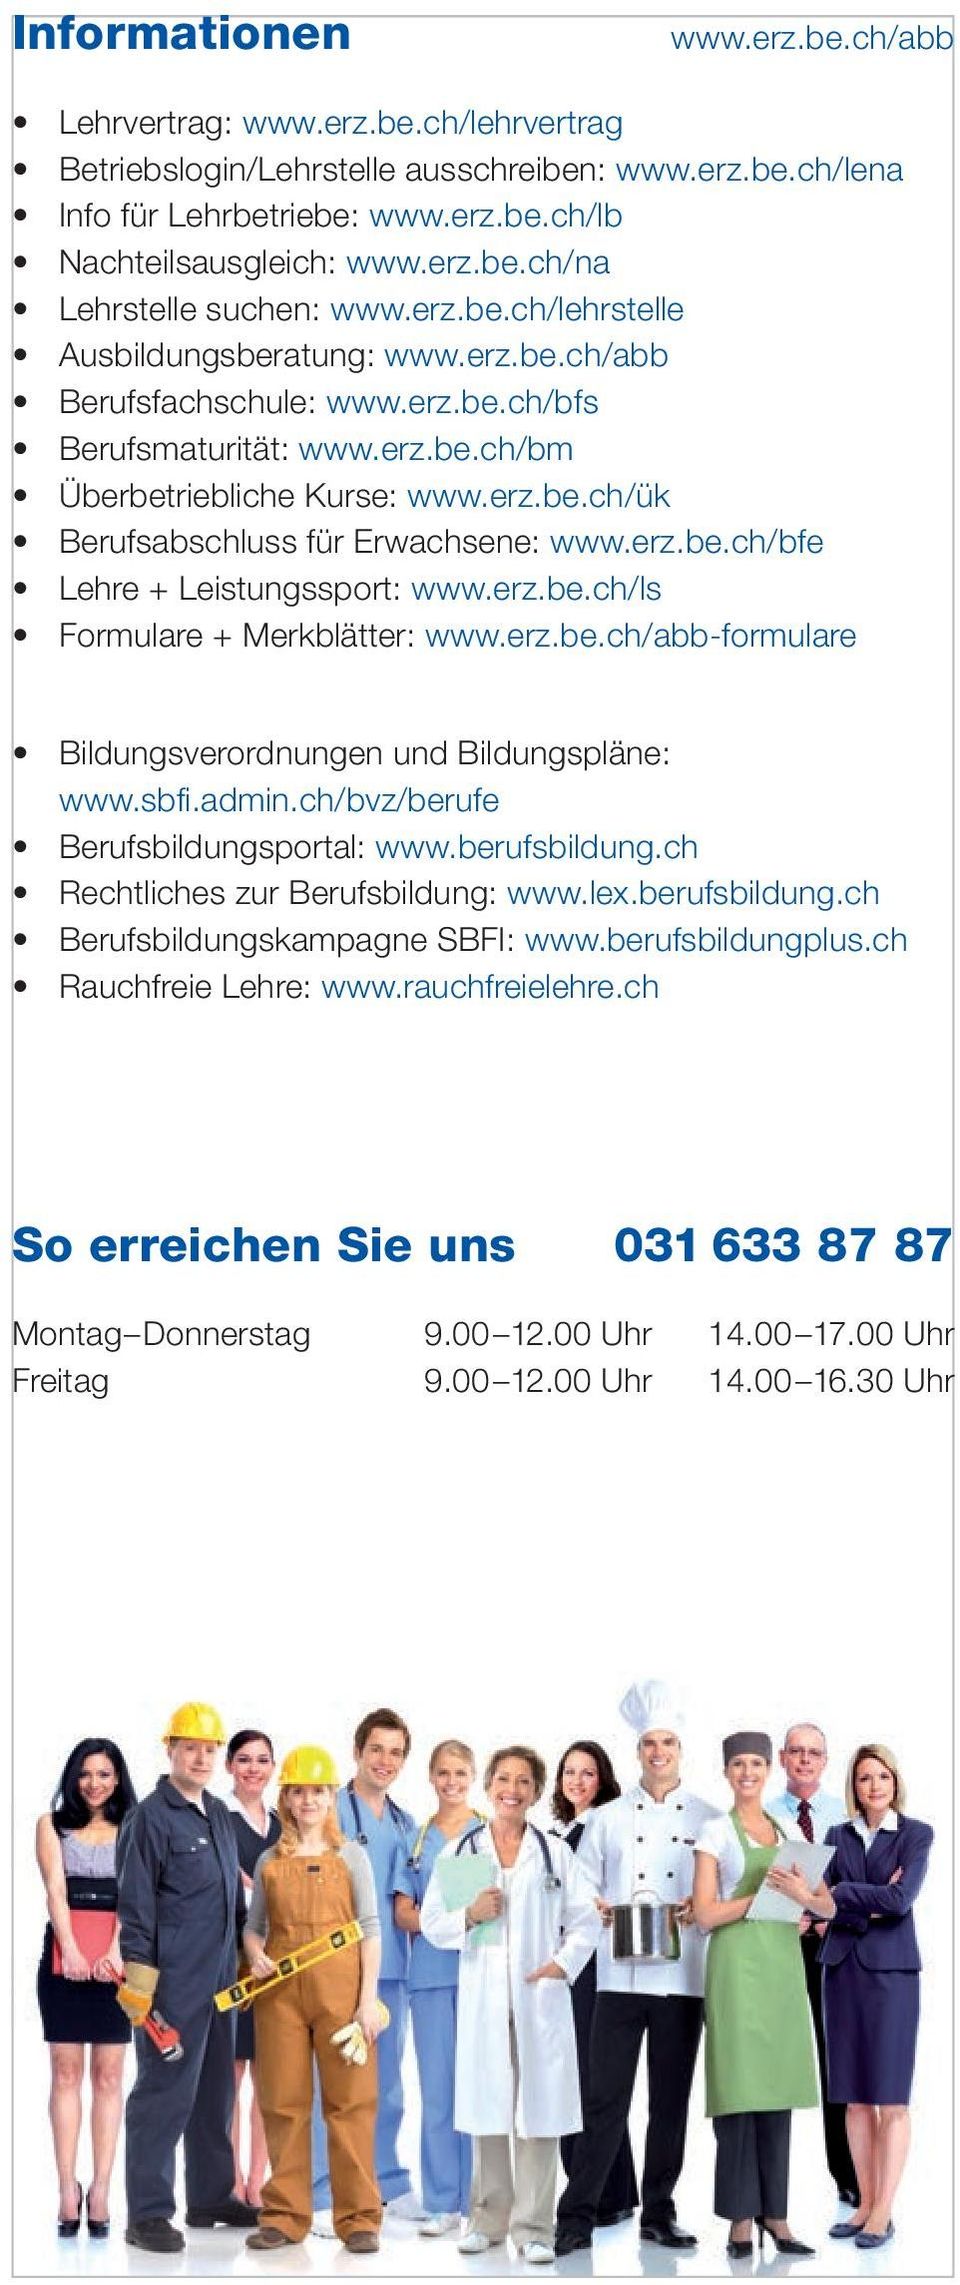 erz.be.ch/bfe Lehre + Leistungssport: www.erz.be.ch/ls Formulare + Merkblätter: www.erz.be.ch/abb-formulare Bildungsverordnungen und Bildungspläne: www.sbfi.admin.